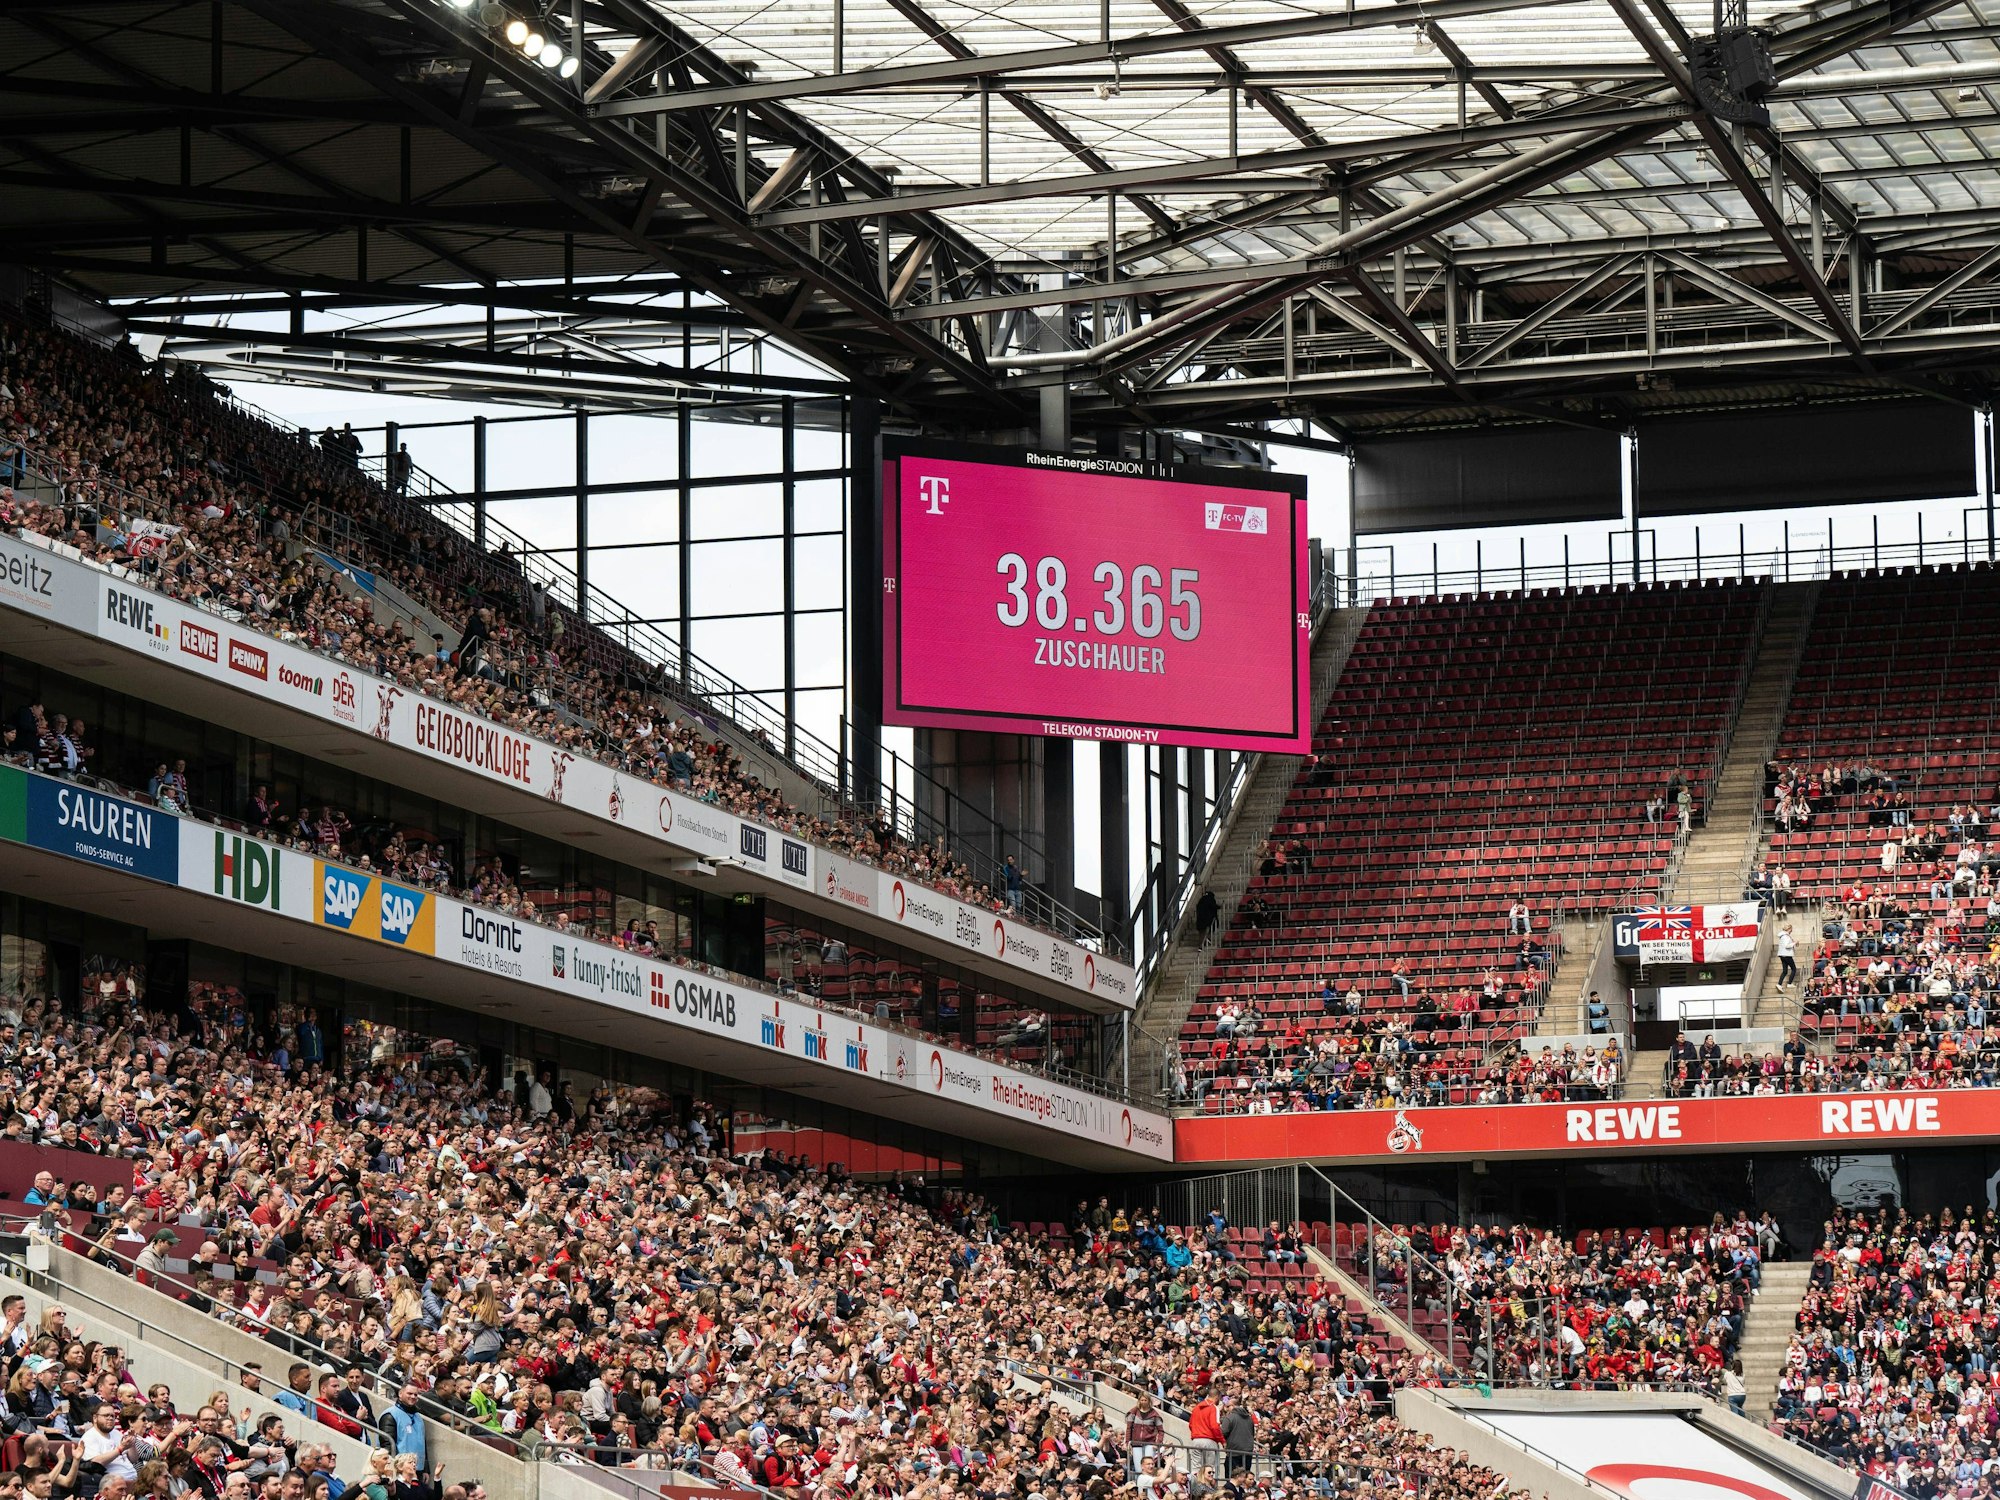 Beim Spiel der Frauen des 1. FC Köln gegen Eintracht Frankfurt kamen 38.365 Zuschauerinnen und Zuschauer. Die Anzeigetafel zeigt die offizielle Zahl.